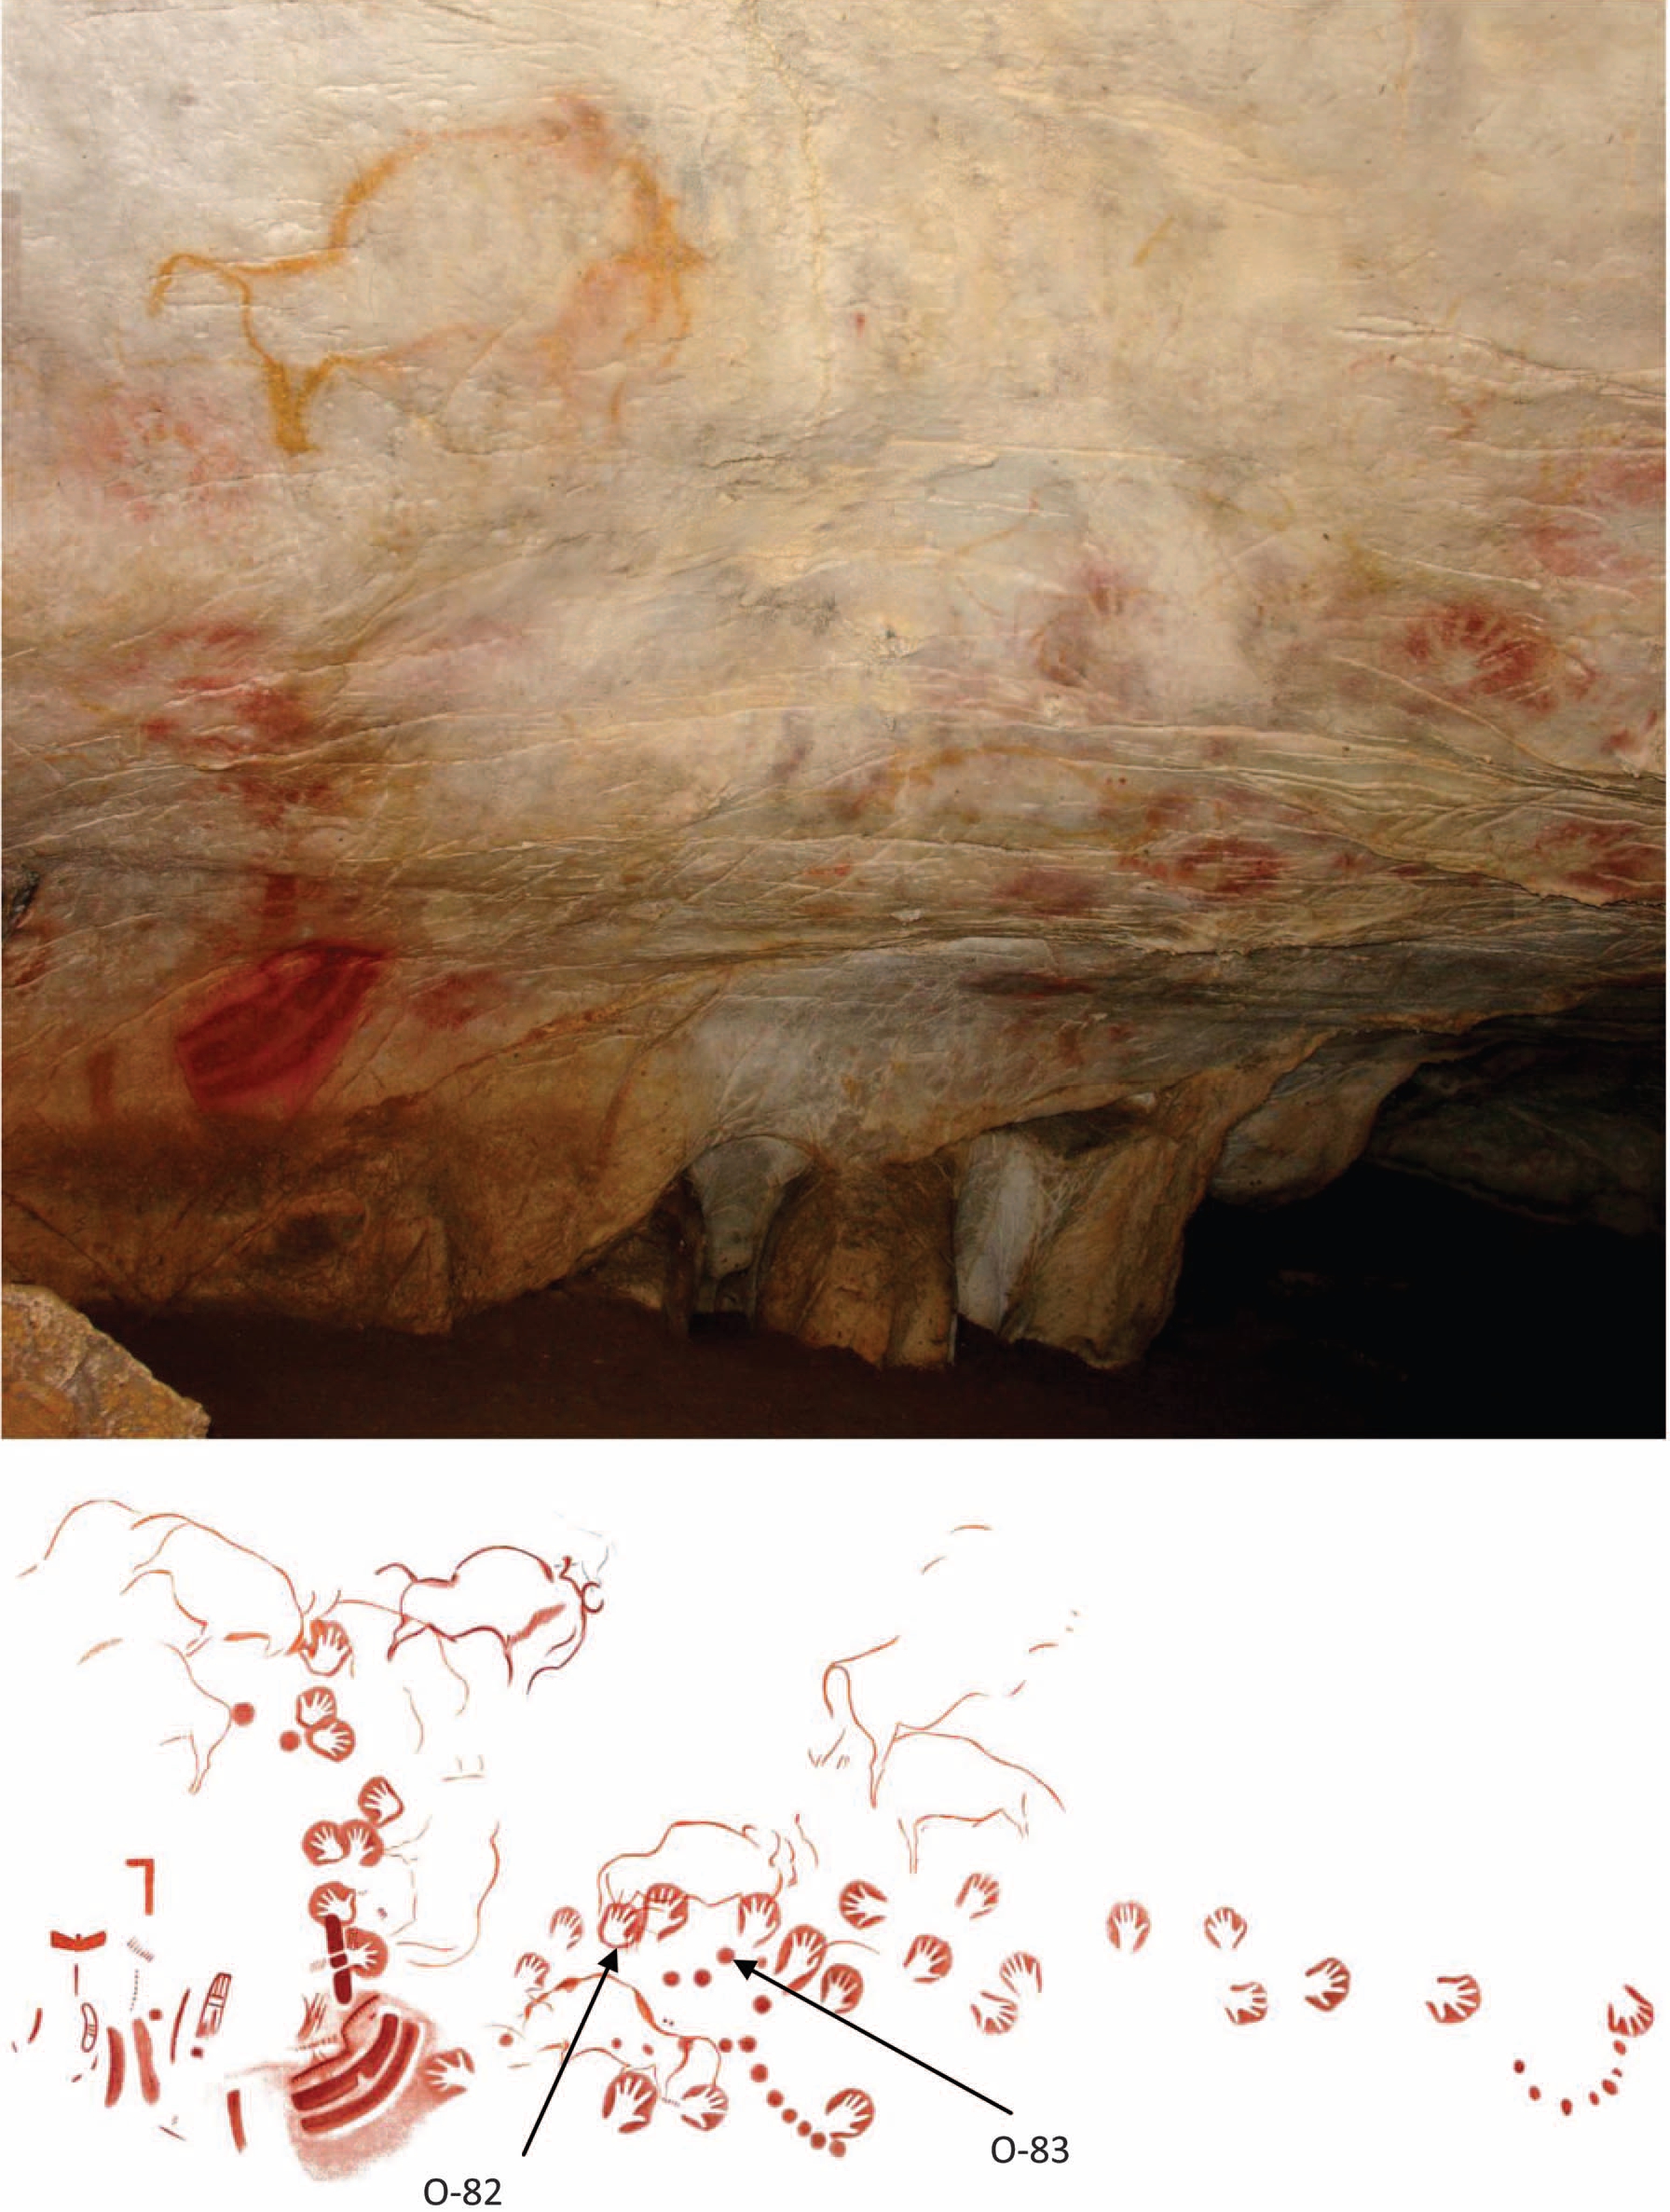 Les peintures rupestres O-83 seraient âgées d'au moins 40.800 ans. Elles ont été trouvées dans la grotte d'El Castillo (photographie du haut)&nbsp;dans le nord de l'Espagne. Elles ont été recouvertes par des empreintes de mains (O-82), visibles sur le schéma du bas, il y a au minimum 37.900 ans.&nbsp;© Pike et al. 2012, Science